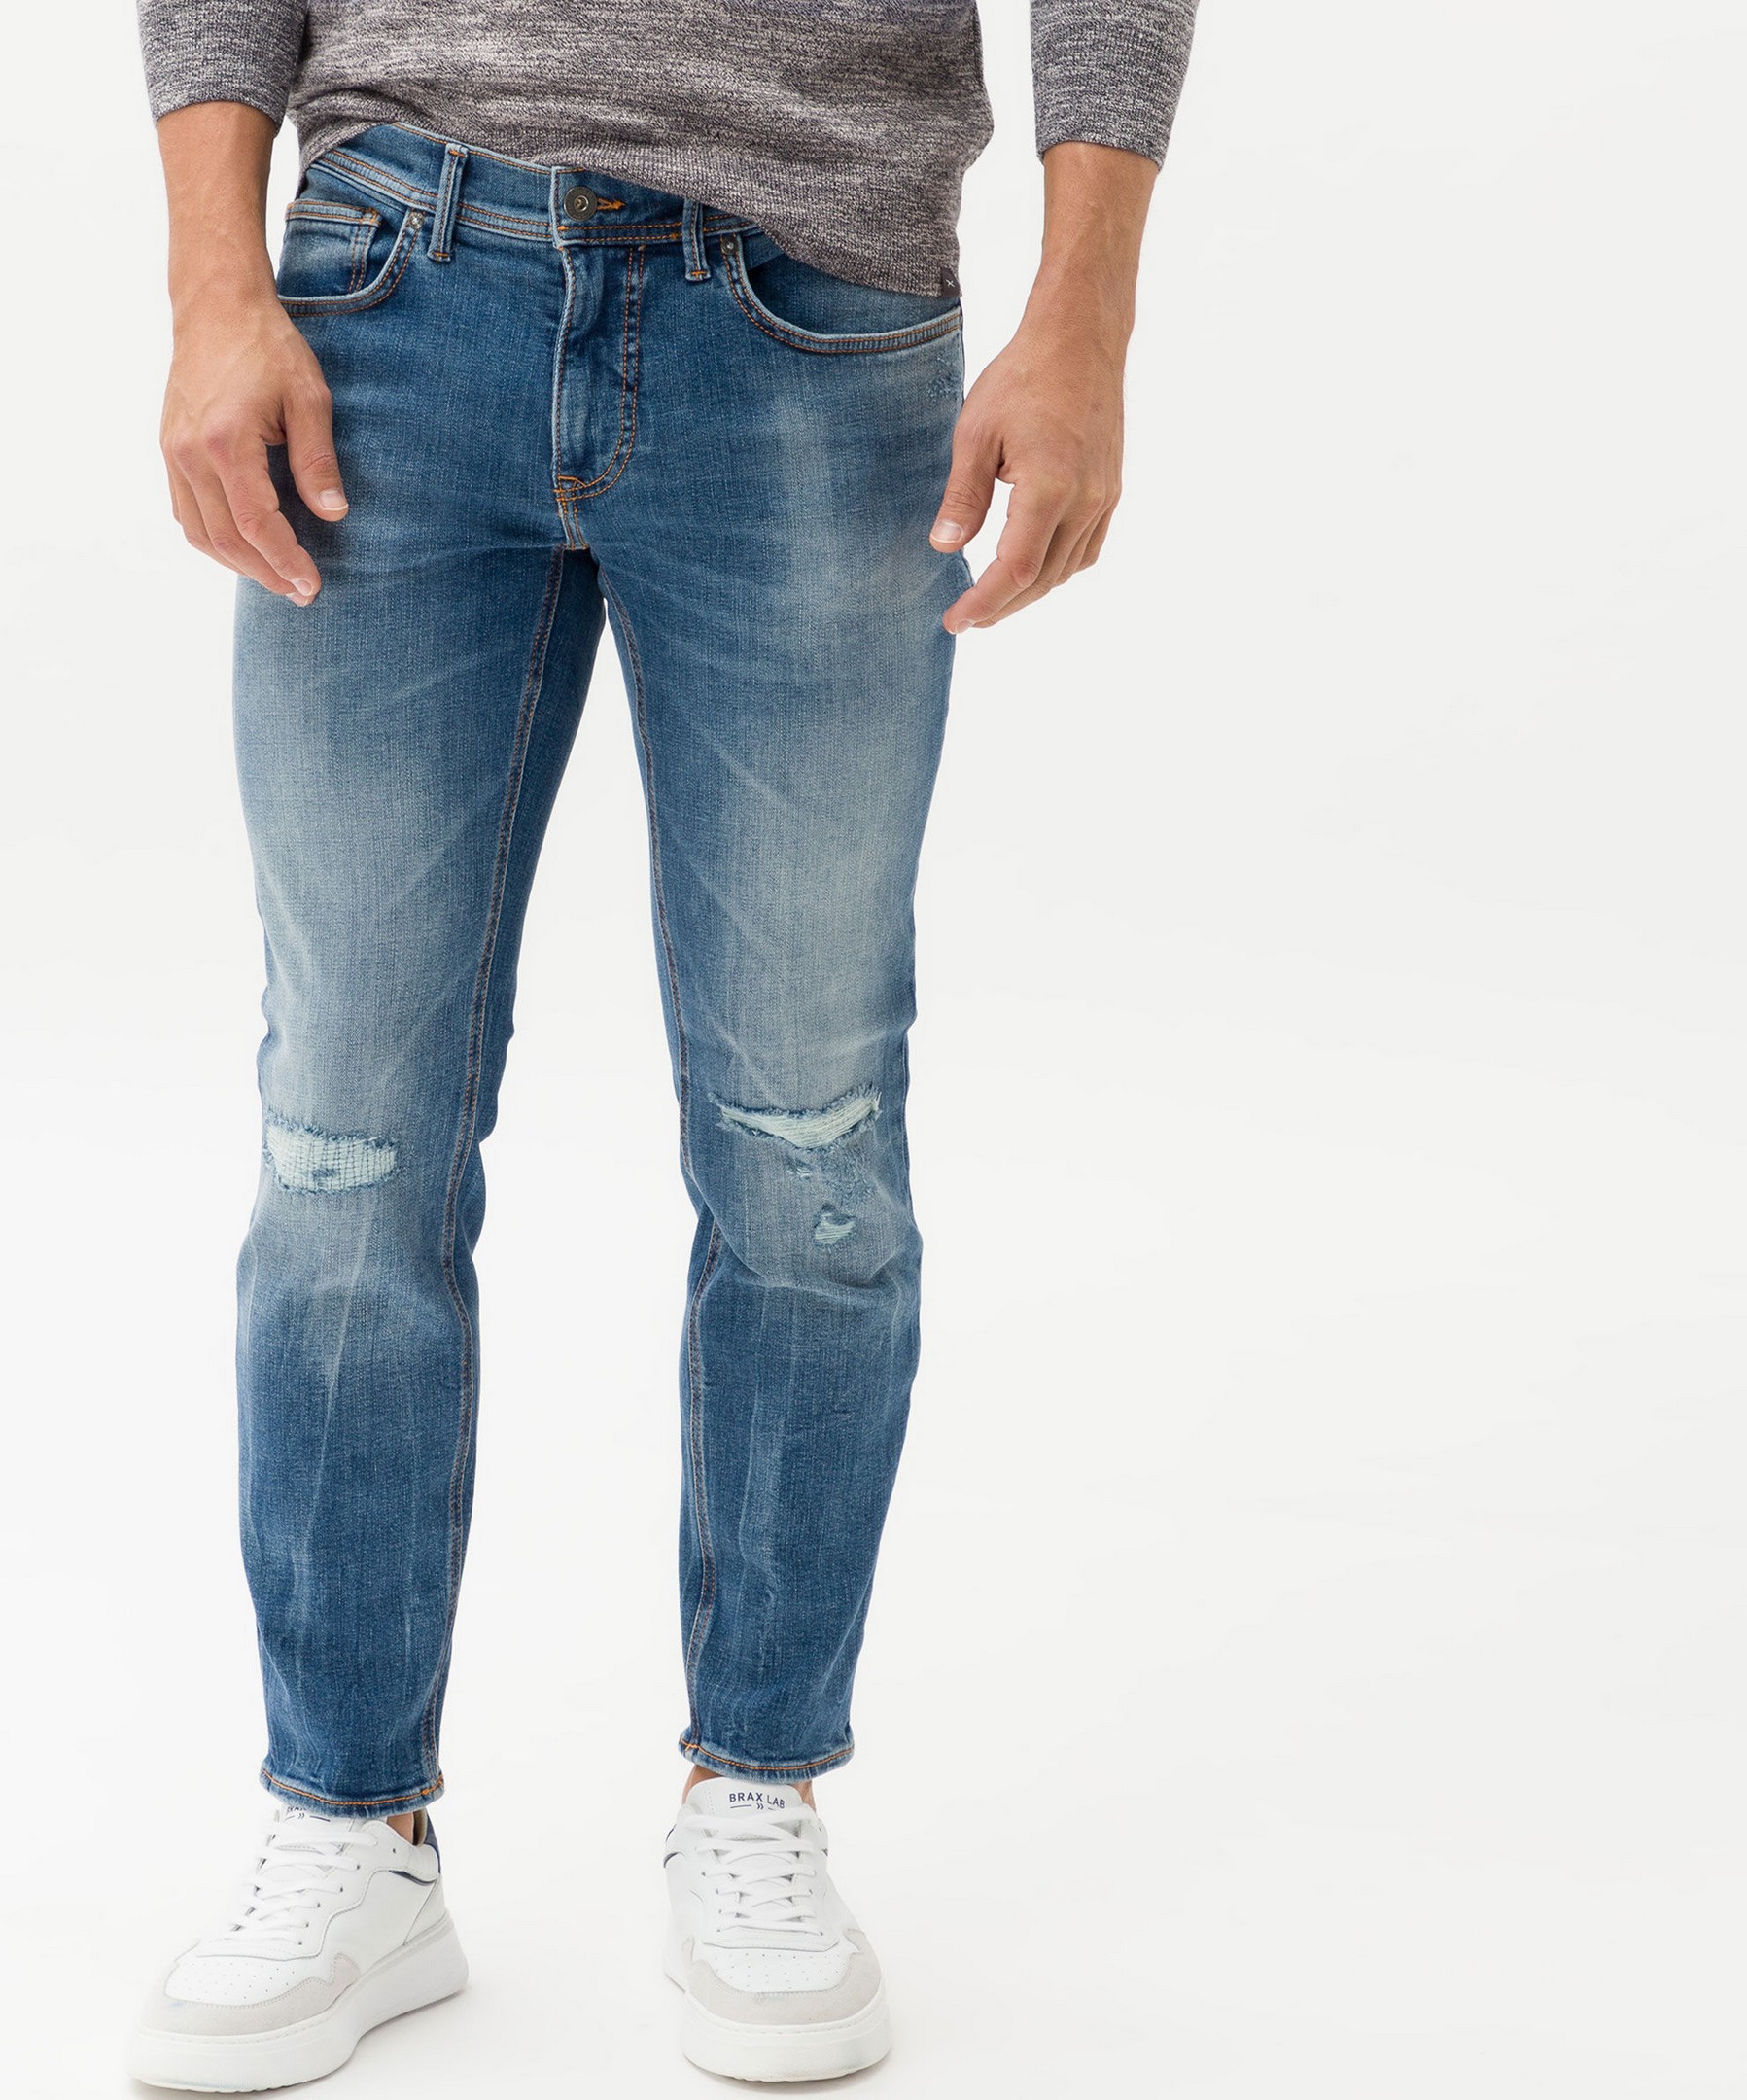 Brax Chris Denim Planet Jeans Vintage | Rozing Hi-Flex Destroyed Blue Superstretch Blue Fashion Indigo 5-Pocket Jan Men\'s